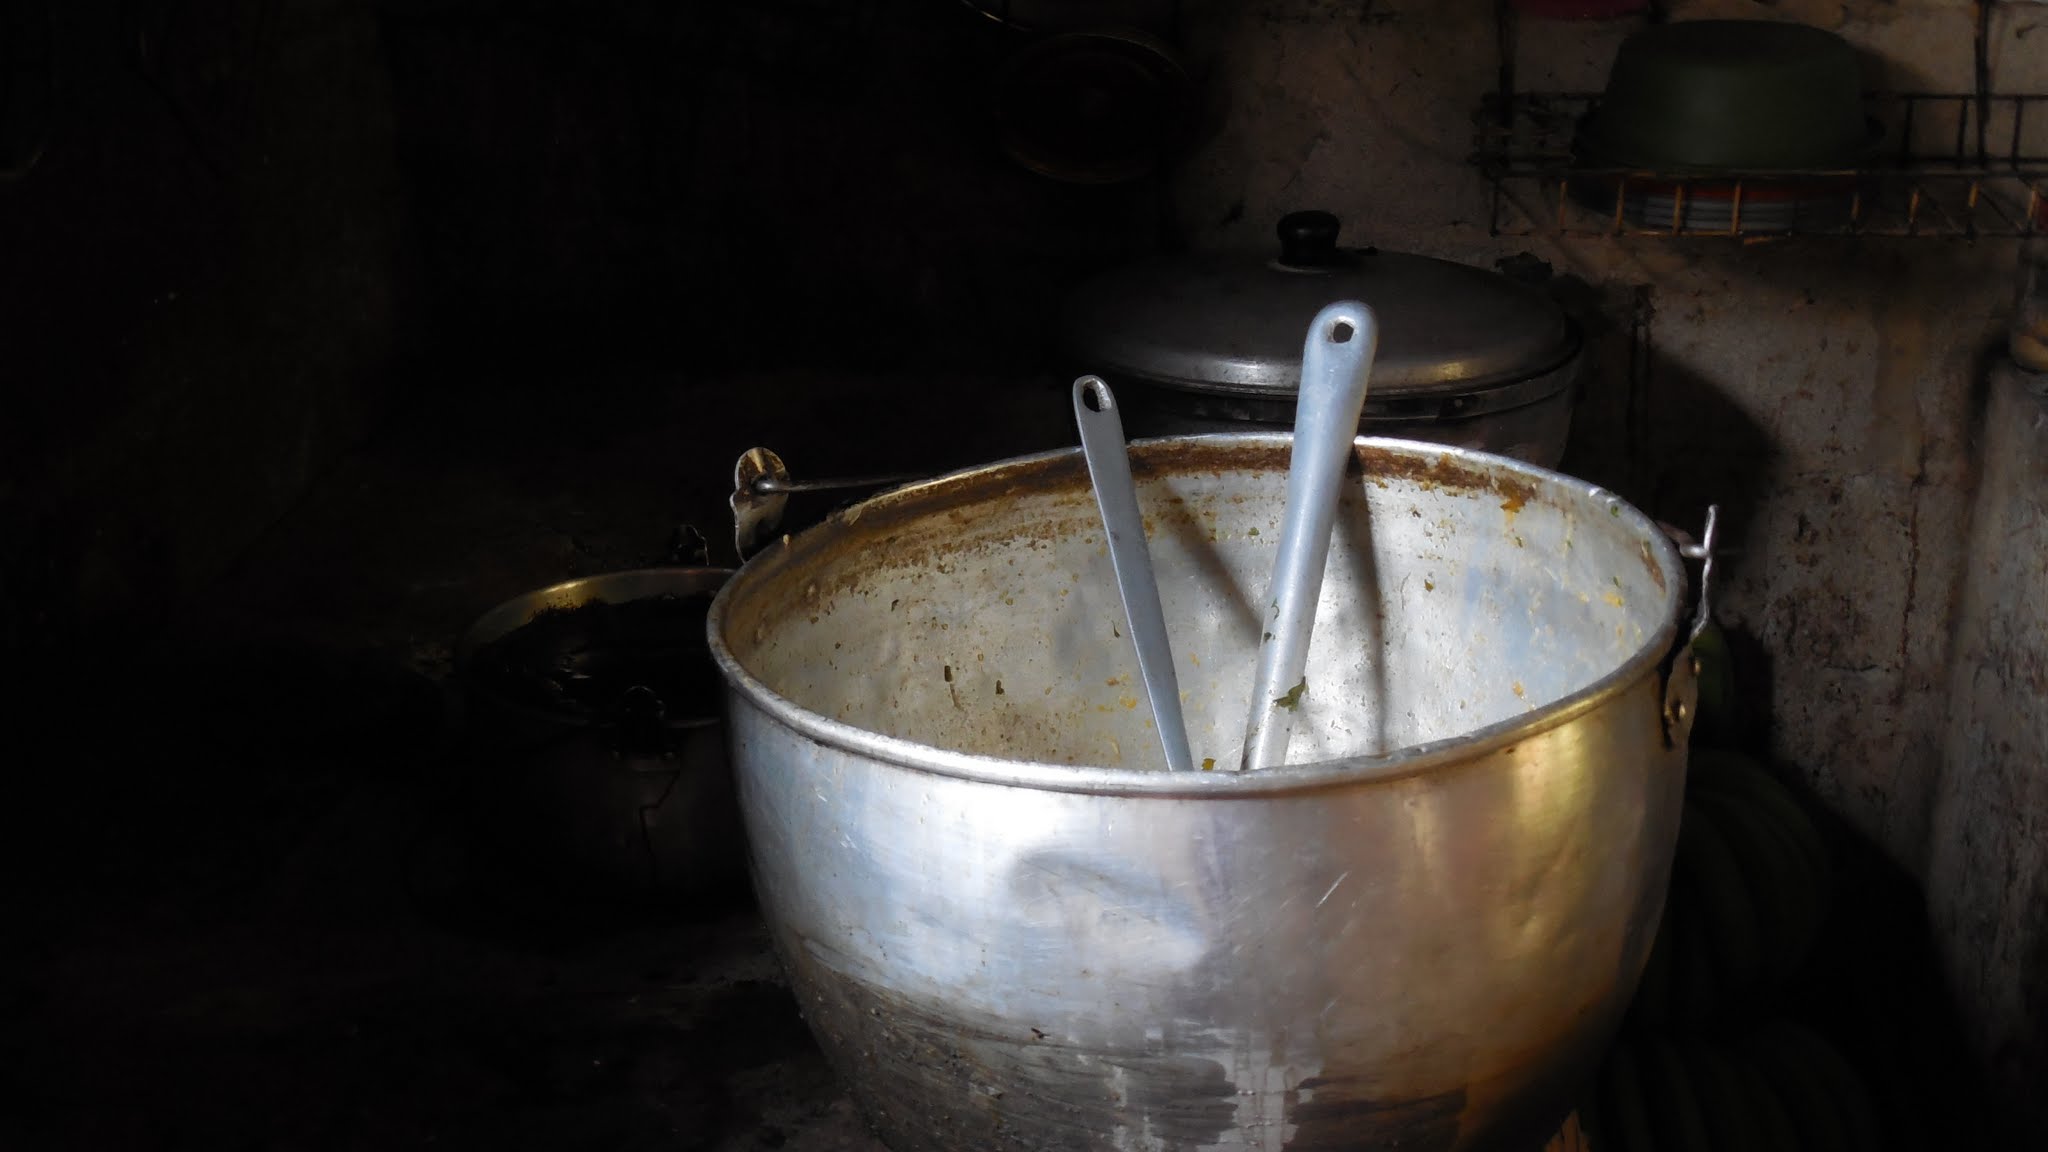 Empty kitchen pot